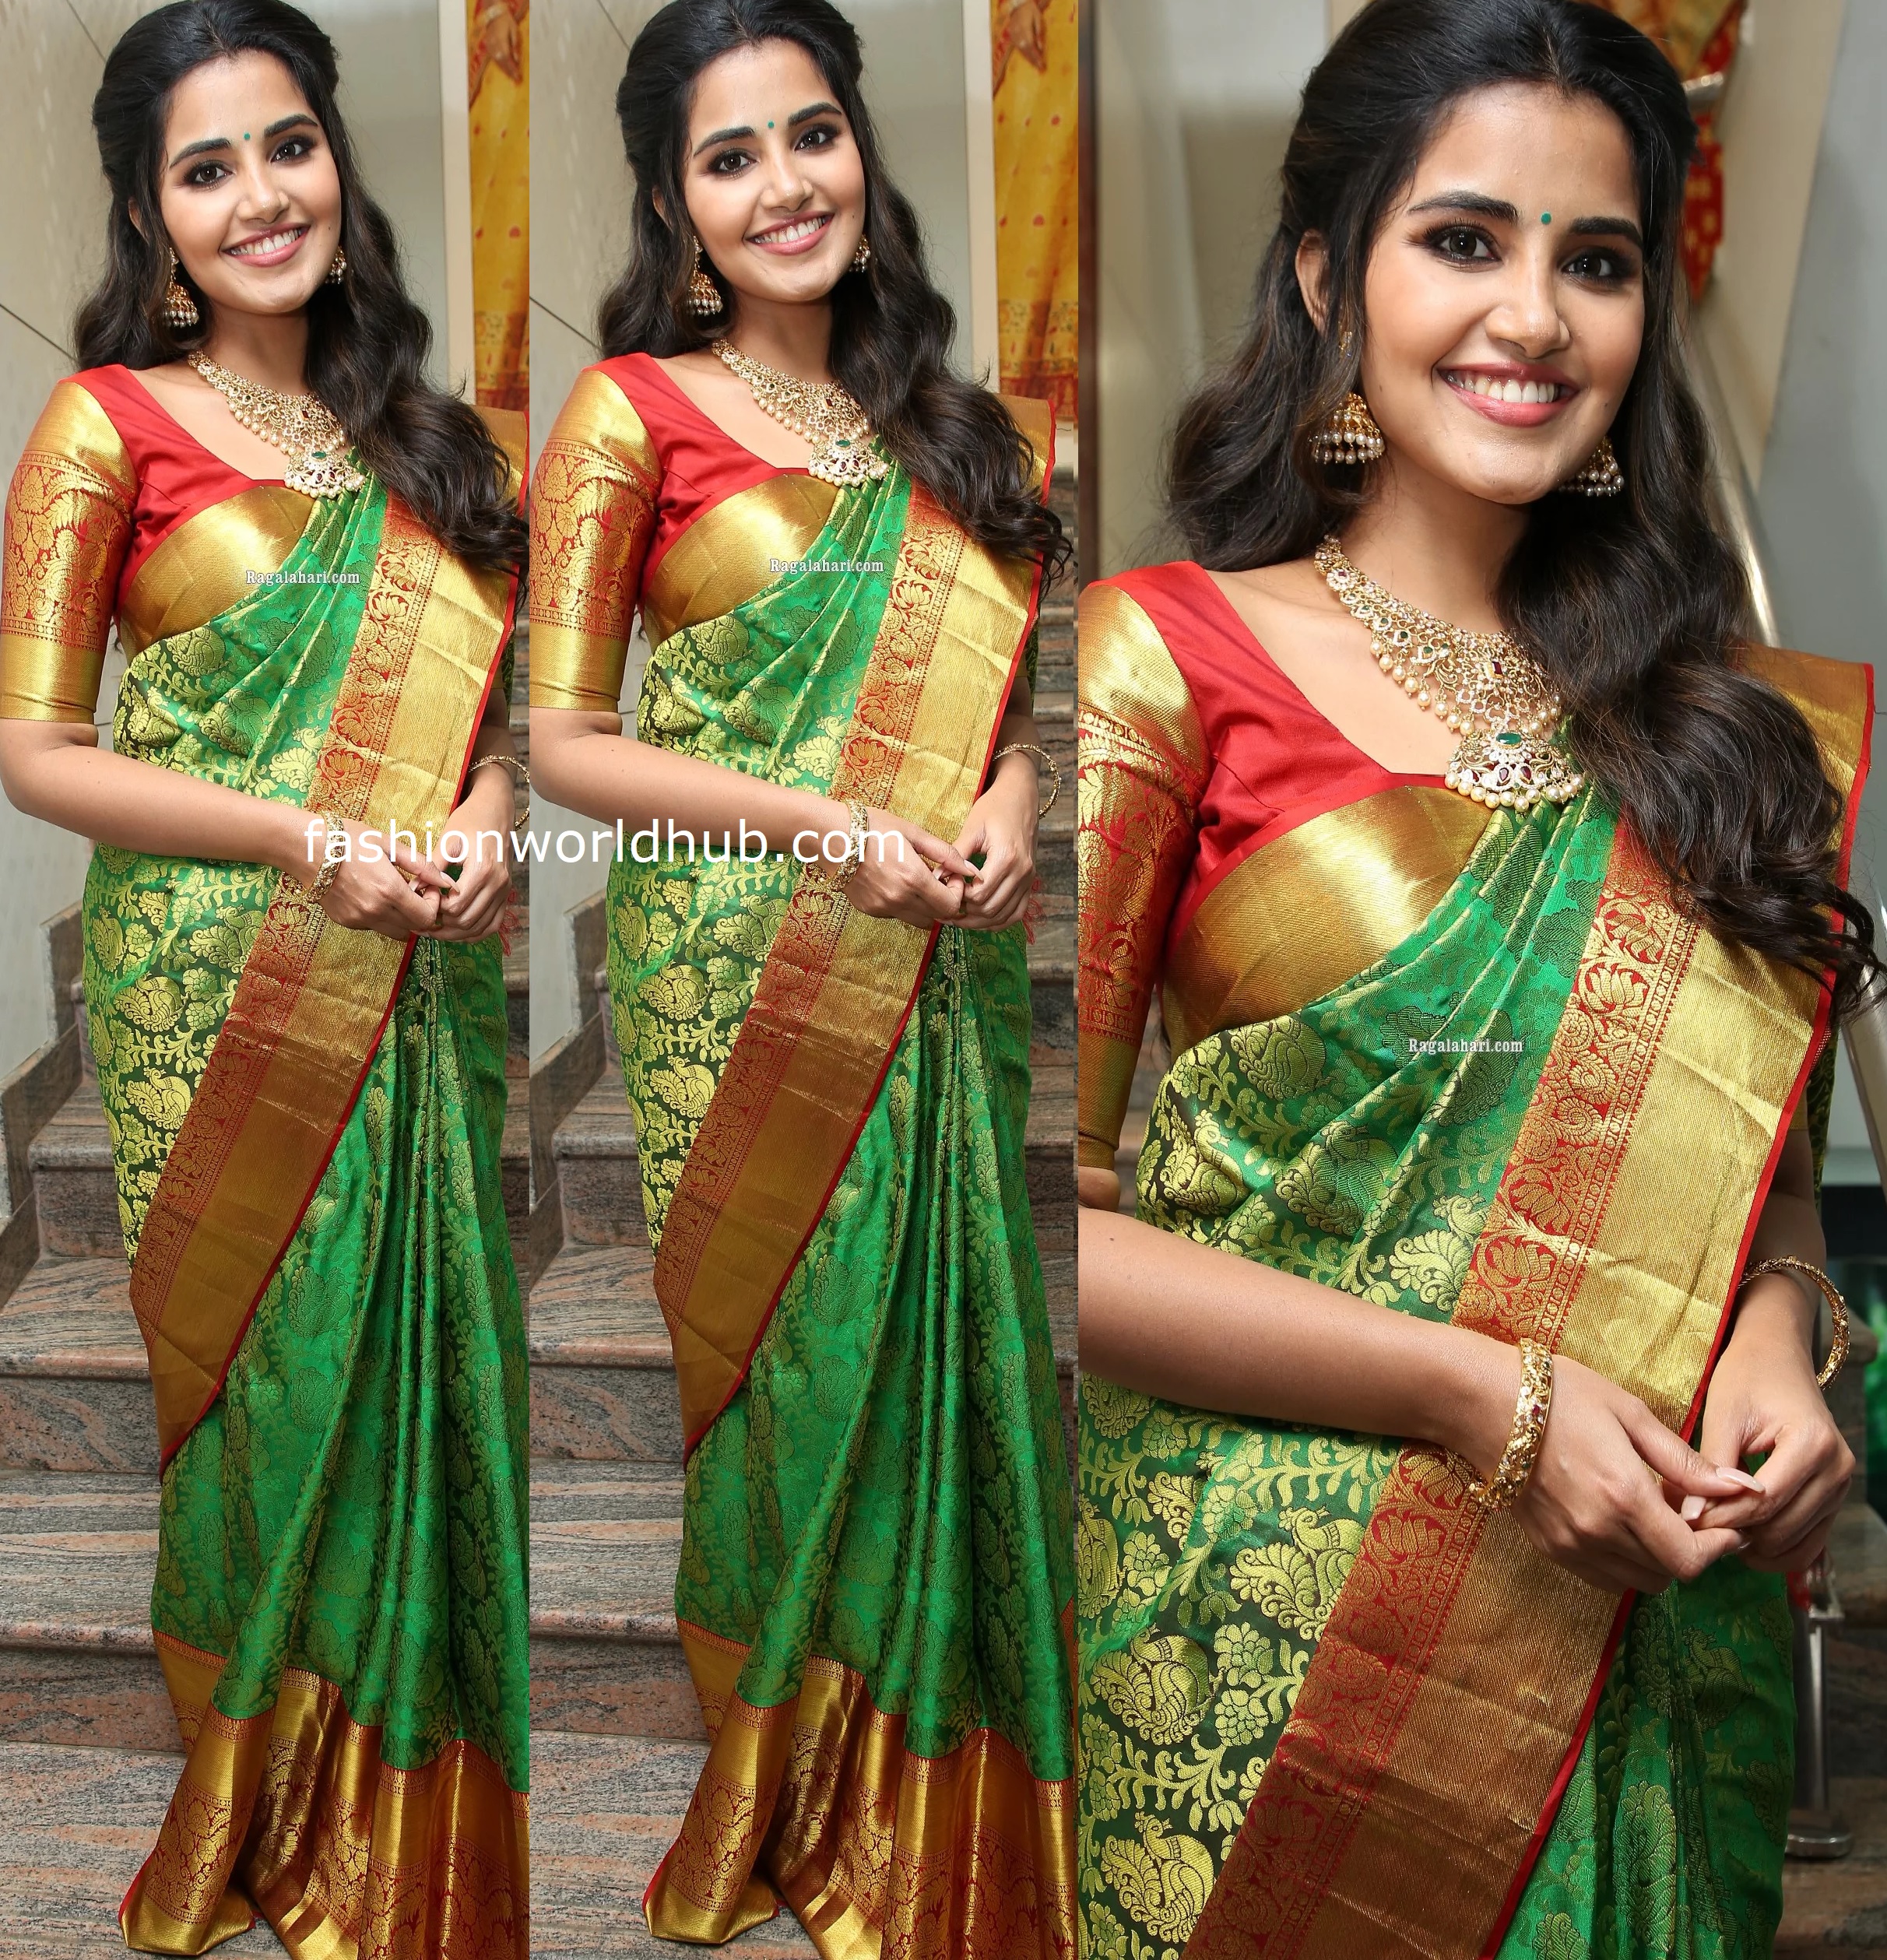 Anupama parameswaran in a Green silk saree | Fashionworldhub